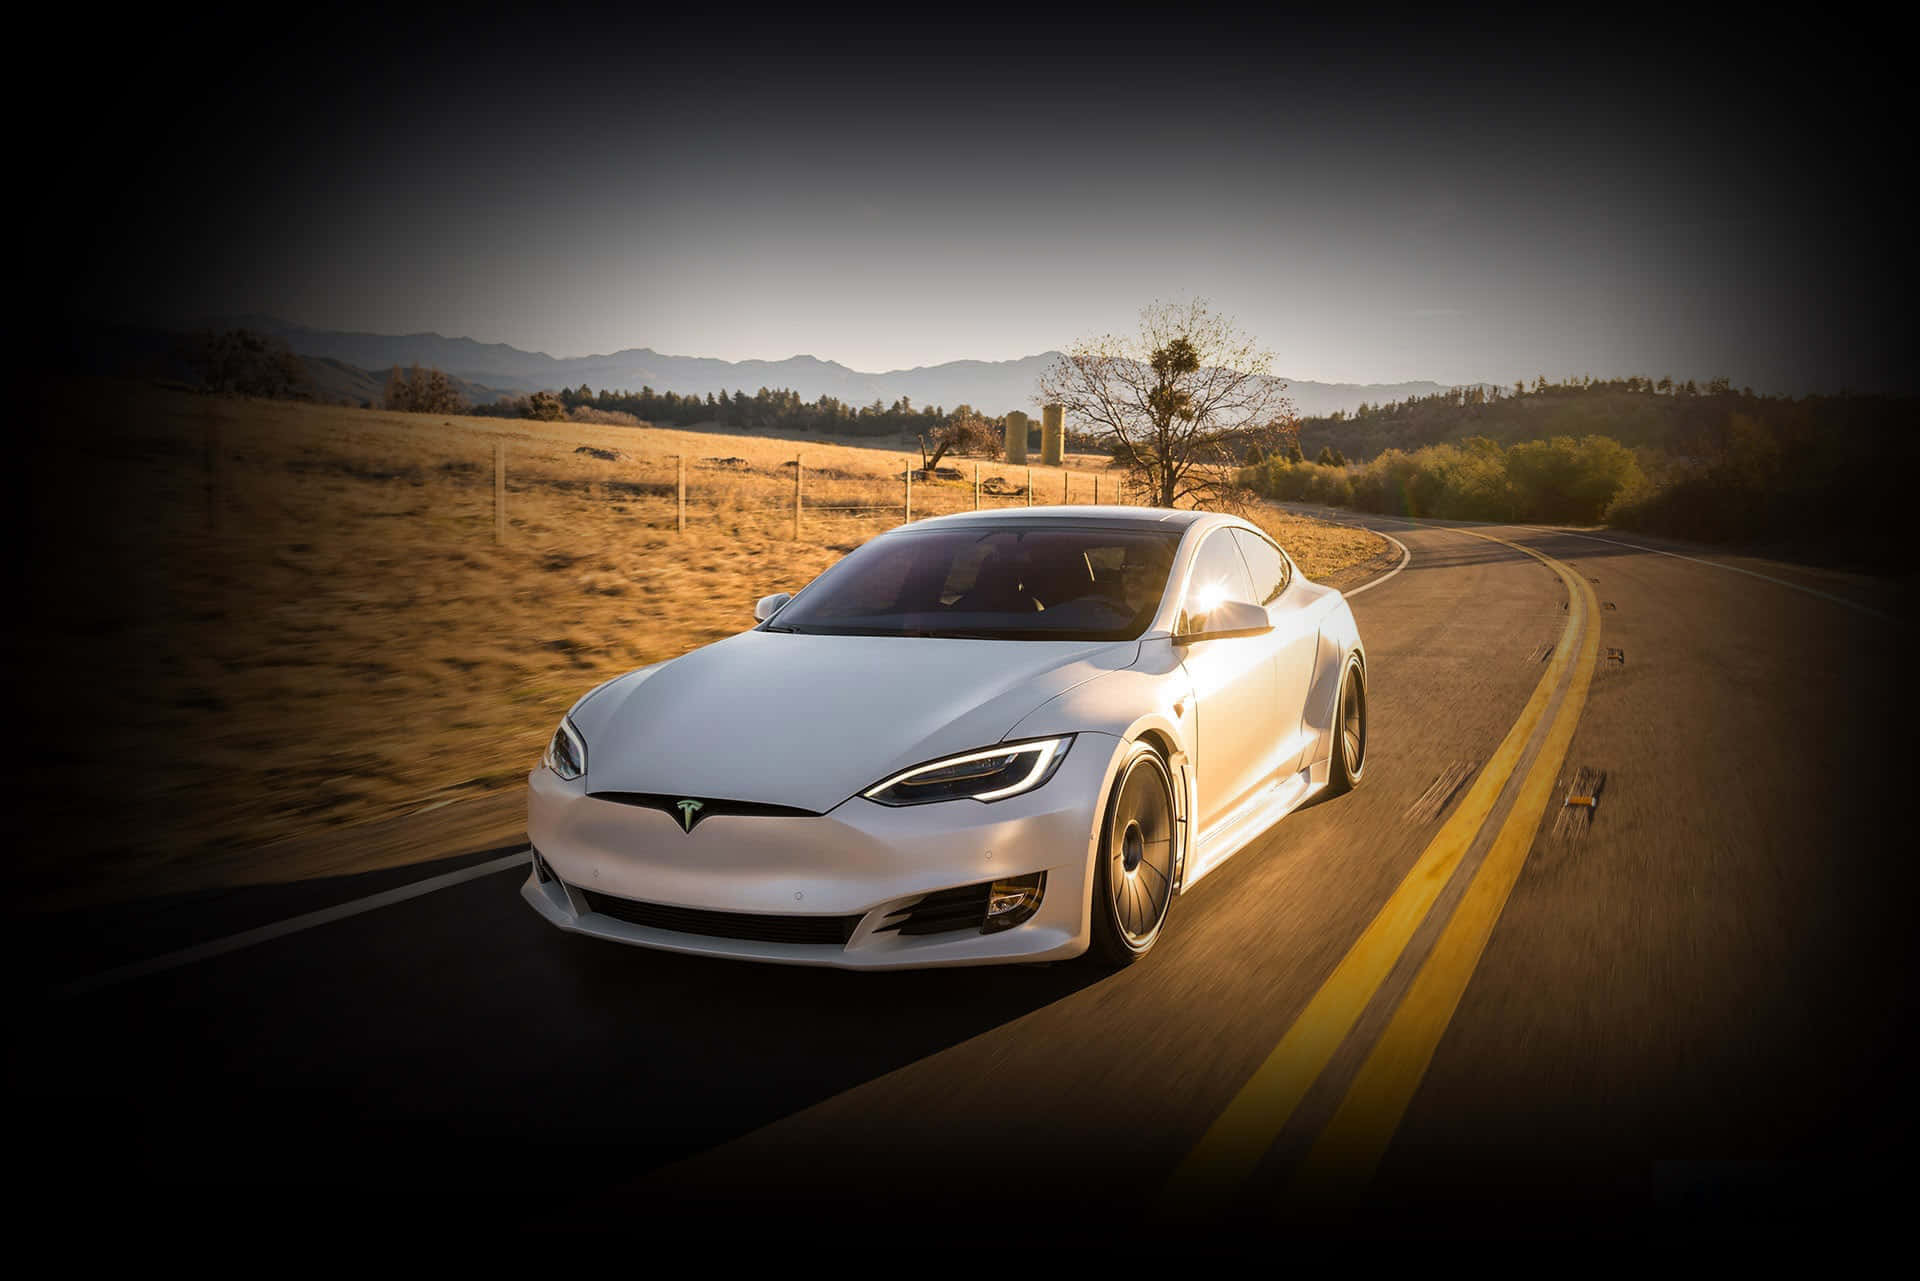 Teslaselektriske Biler Sætter Den Nye Standard For Miljøvenlig Transport.